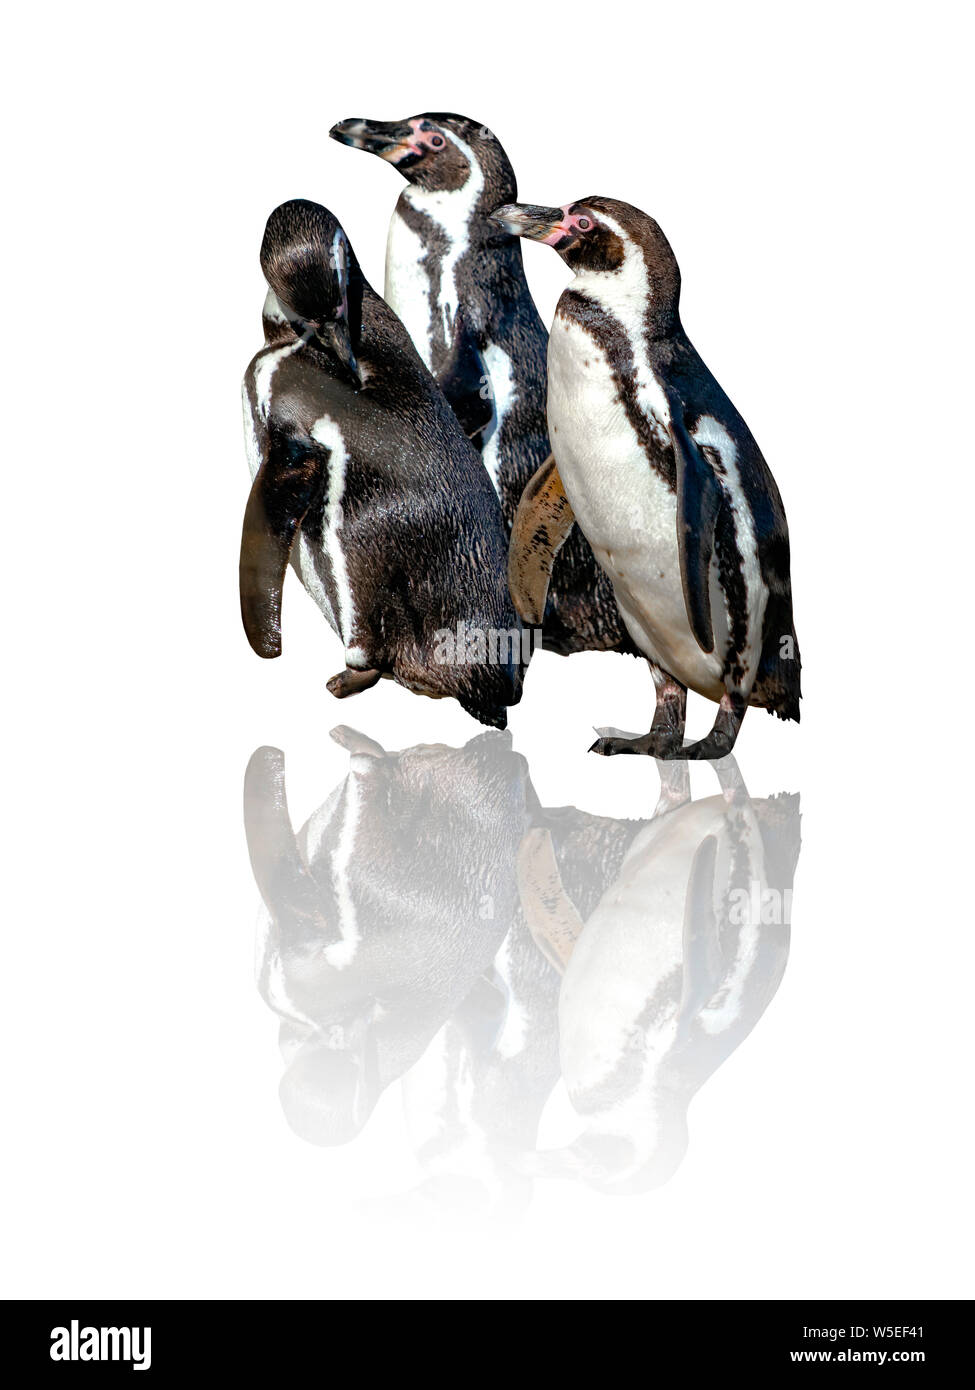 Groupe de trois pingouins de Humboldt, Spheniscus humboldti,isolé sur le fond blanc avec reflète là. Le pingouin est un pingouin d'Amérique du Sud Banque D'Images